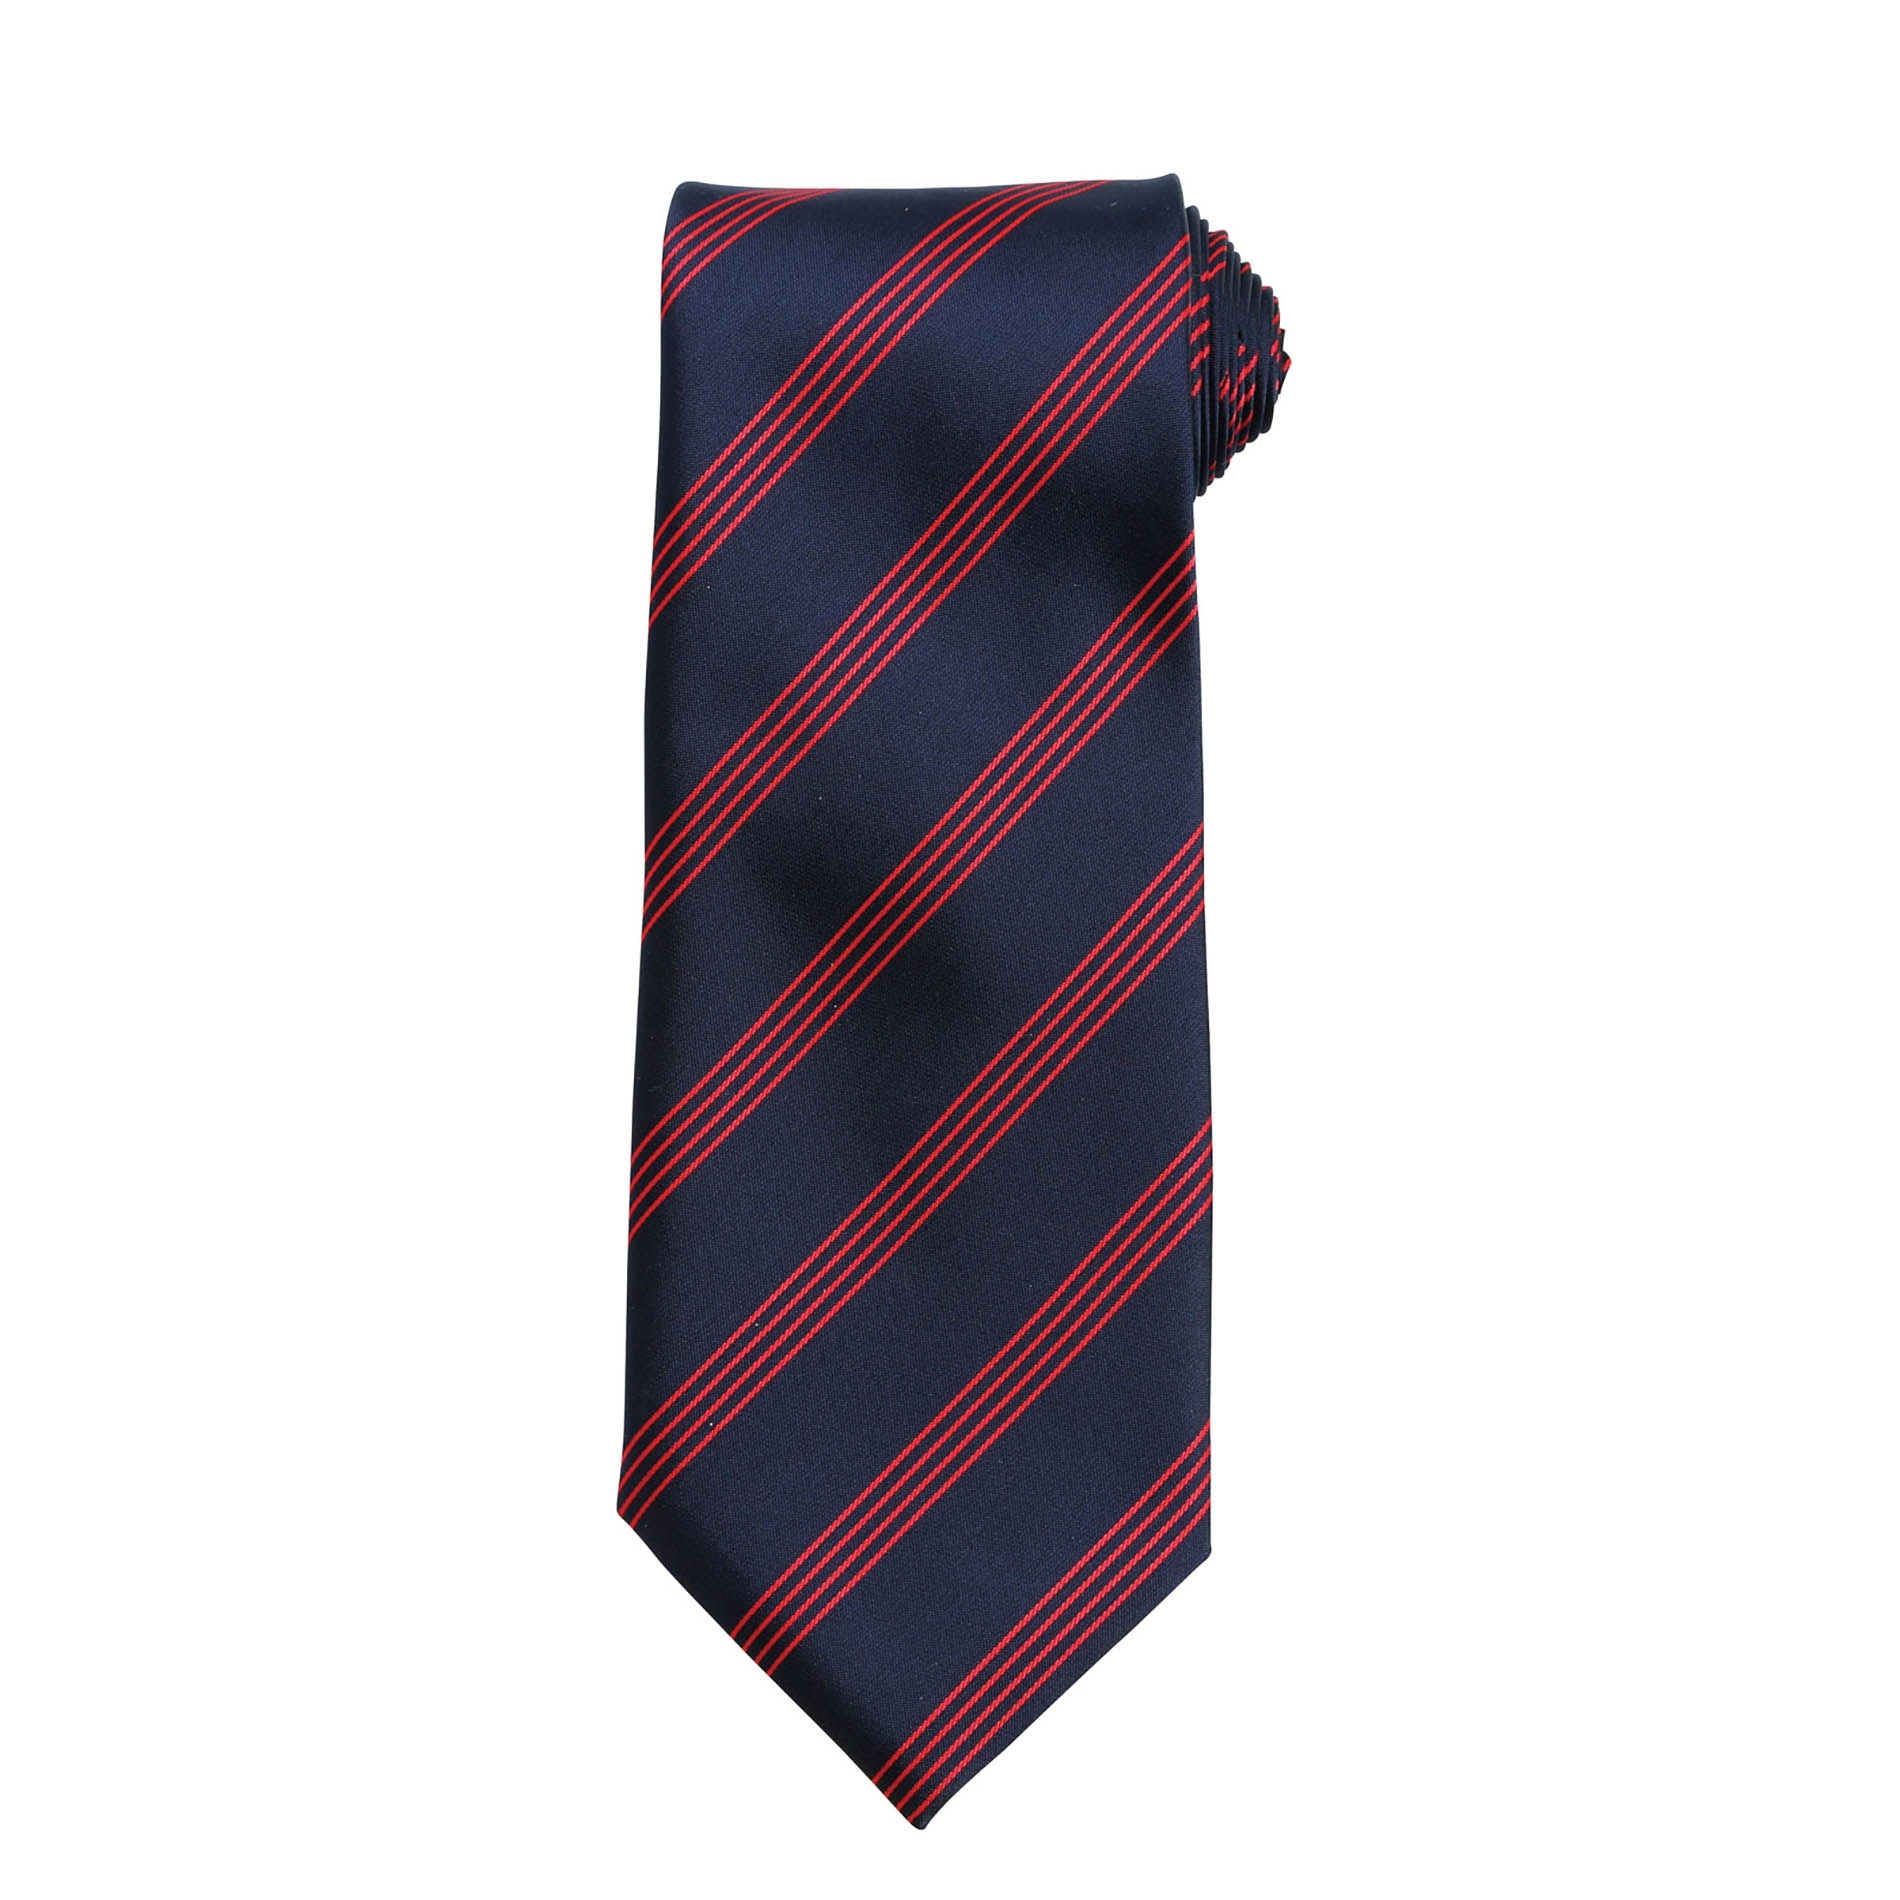 Cravate Four Stripe Dark Navy / Red Bleu